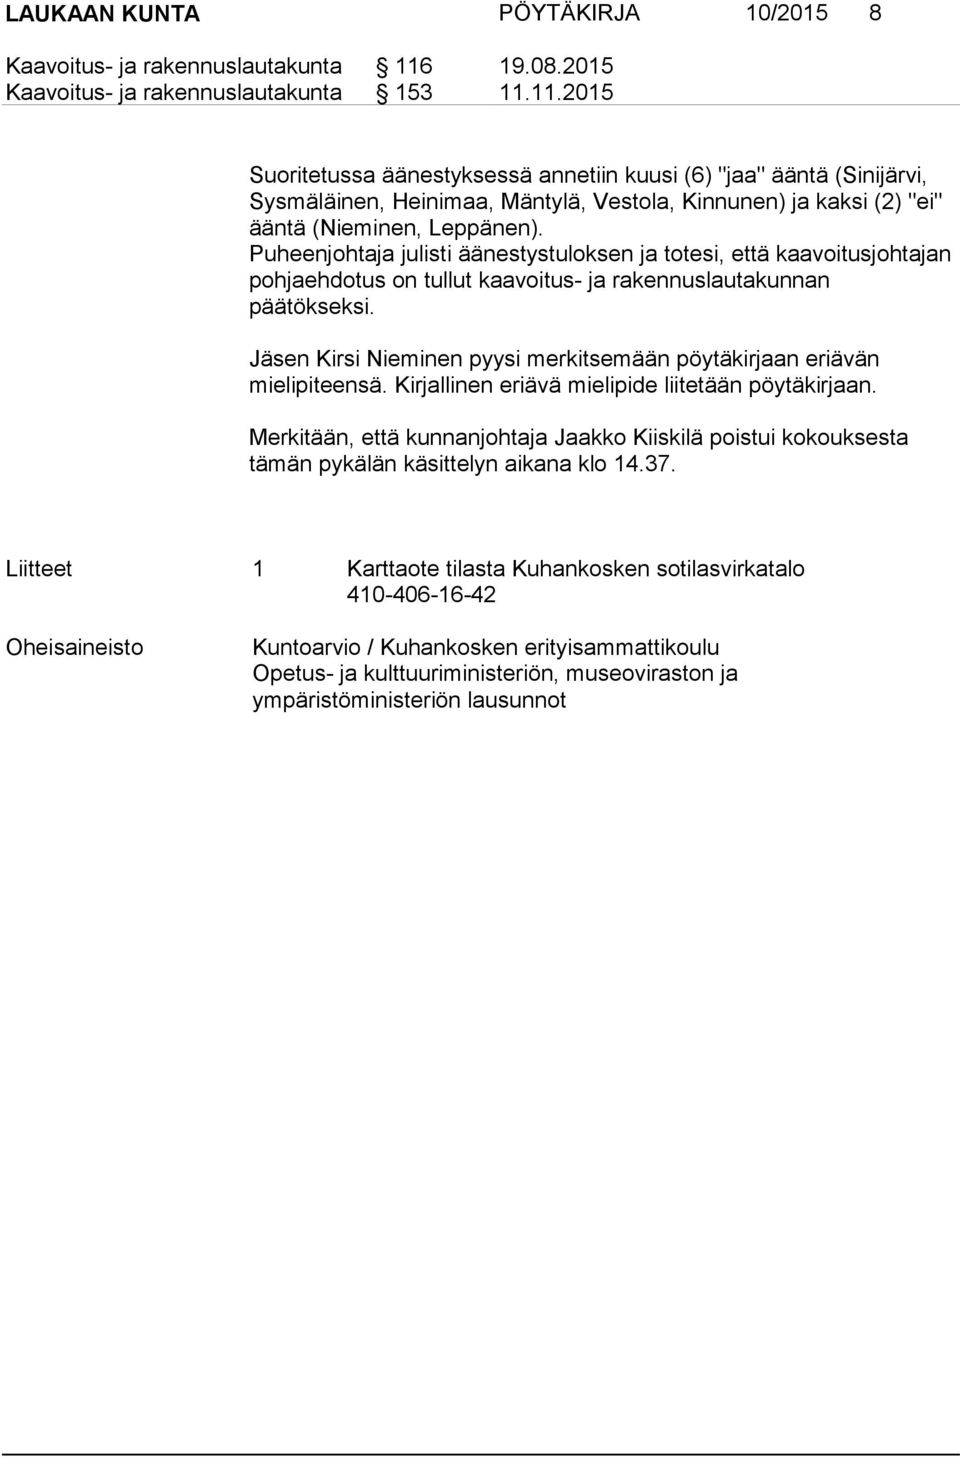 11.2015 Suoritetussa äänestyksessä annetiin kuusi (6) "jaa" ääntä (Sinijärvi, Sysmäläinen, Heinimaa, Mäntylä, Vestola, Kinnunen) ja kaksi (2) "ei" ääntä (Nieminen, Leppänen).